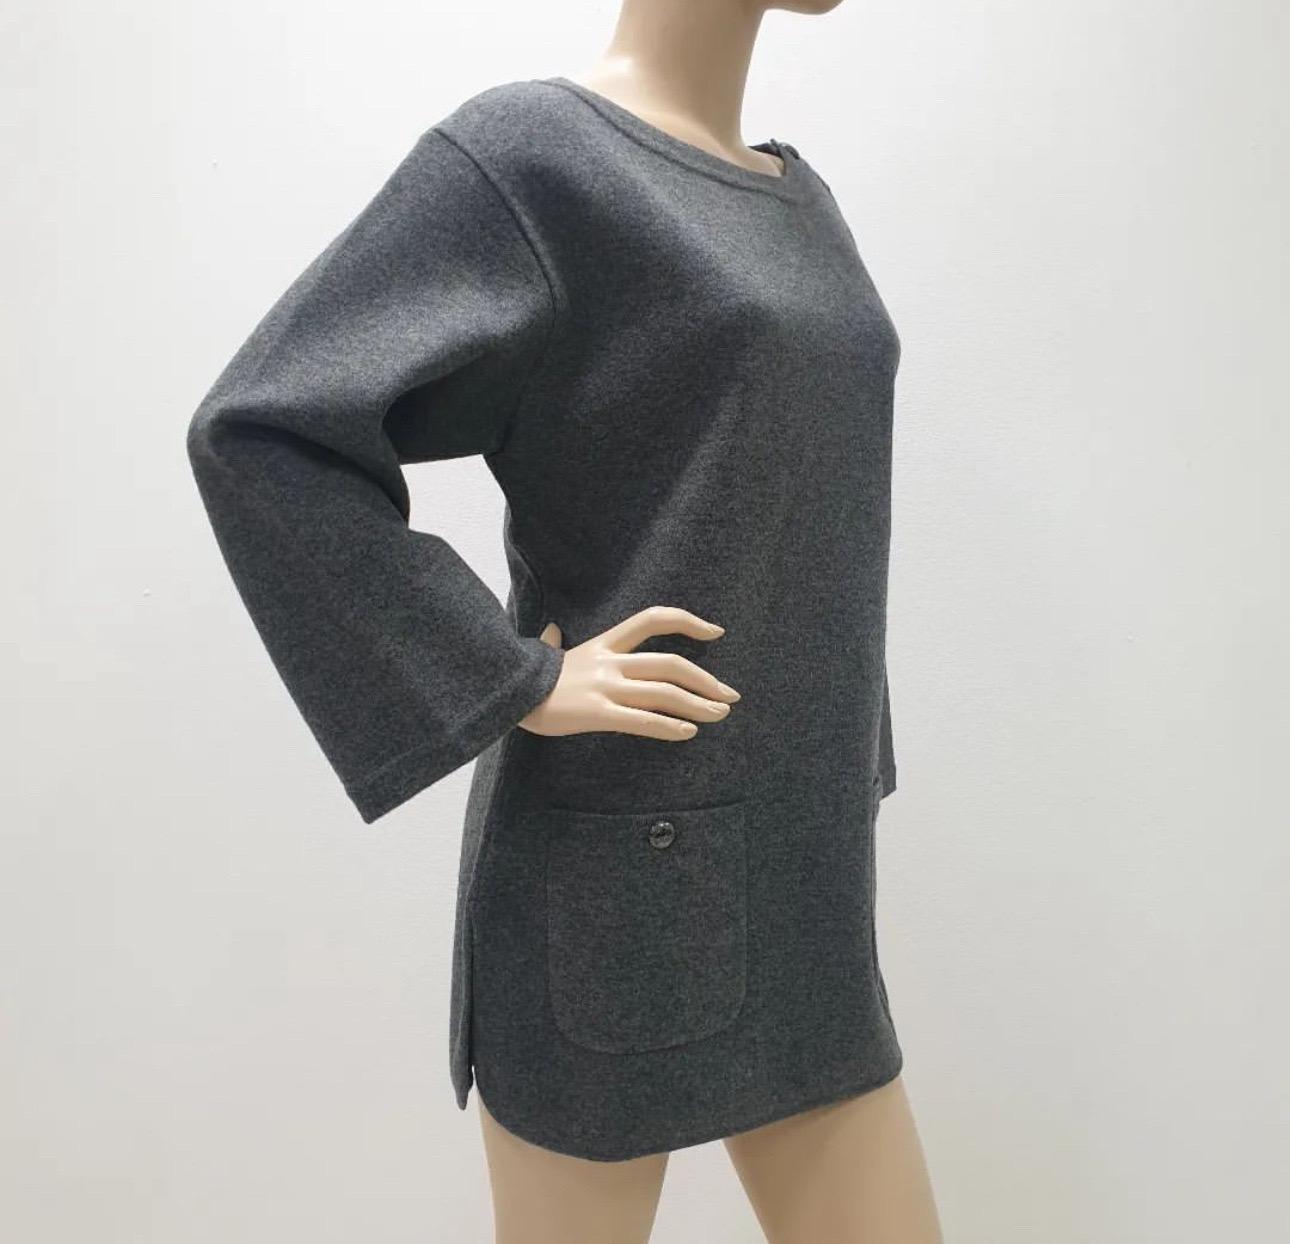 Schicker langer Pullover aus Wolle und Kaschmir von Chanel 

Klassischer Universalartikel für alles 

Markierte Größe 38

Ausgezeichneter Zustand